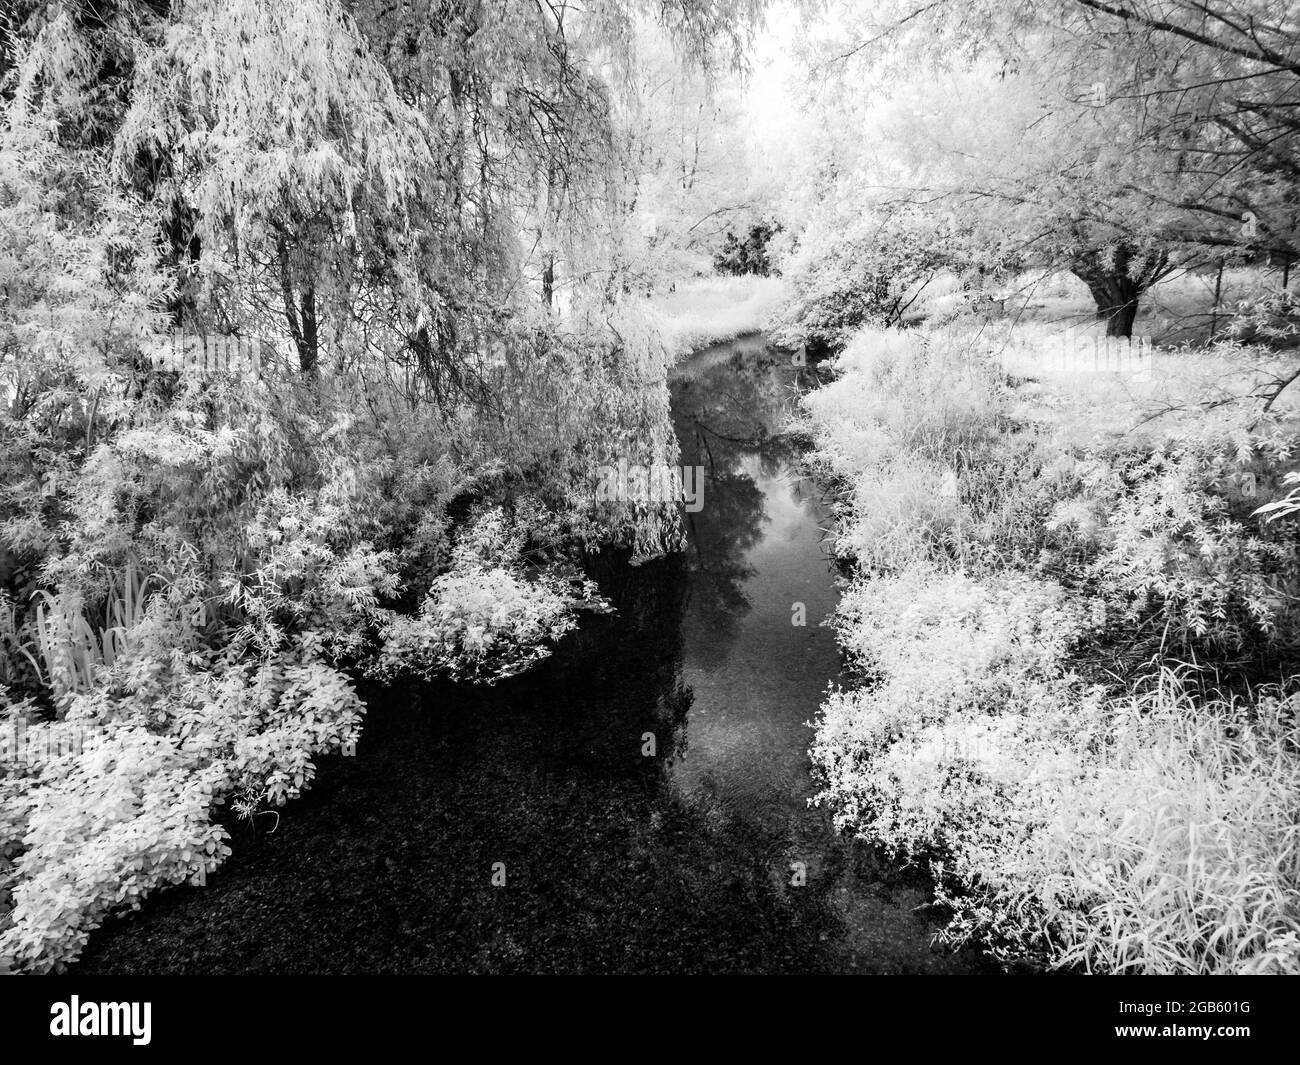 La rivière Kennett près de Marlborough dans le Wiltshire, tourné dans l'infrarouge. Banque D'Images